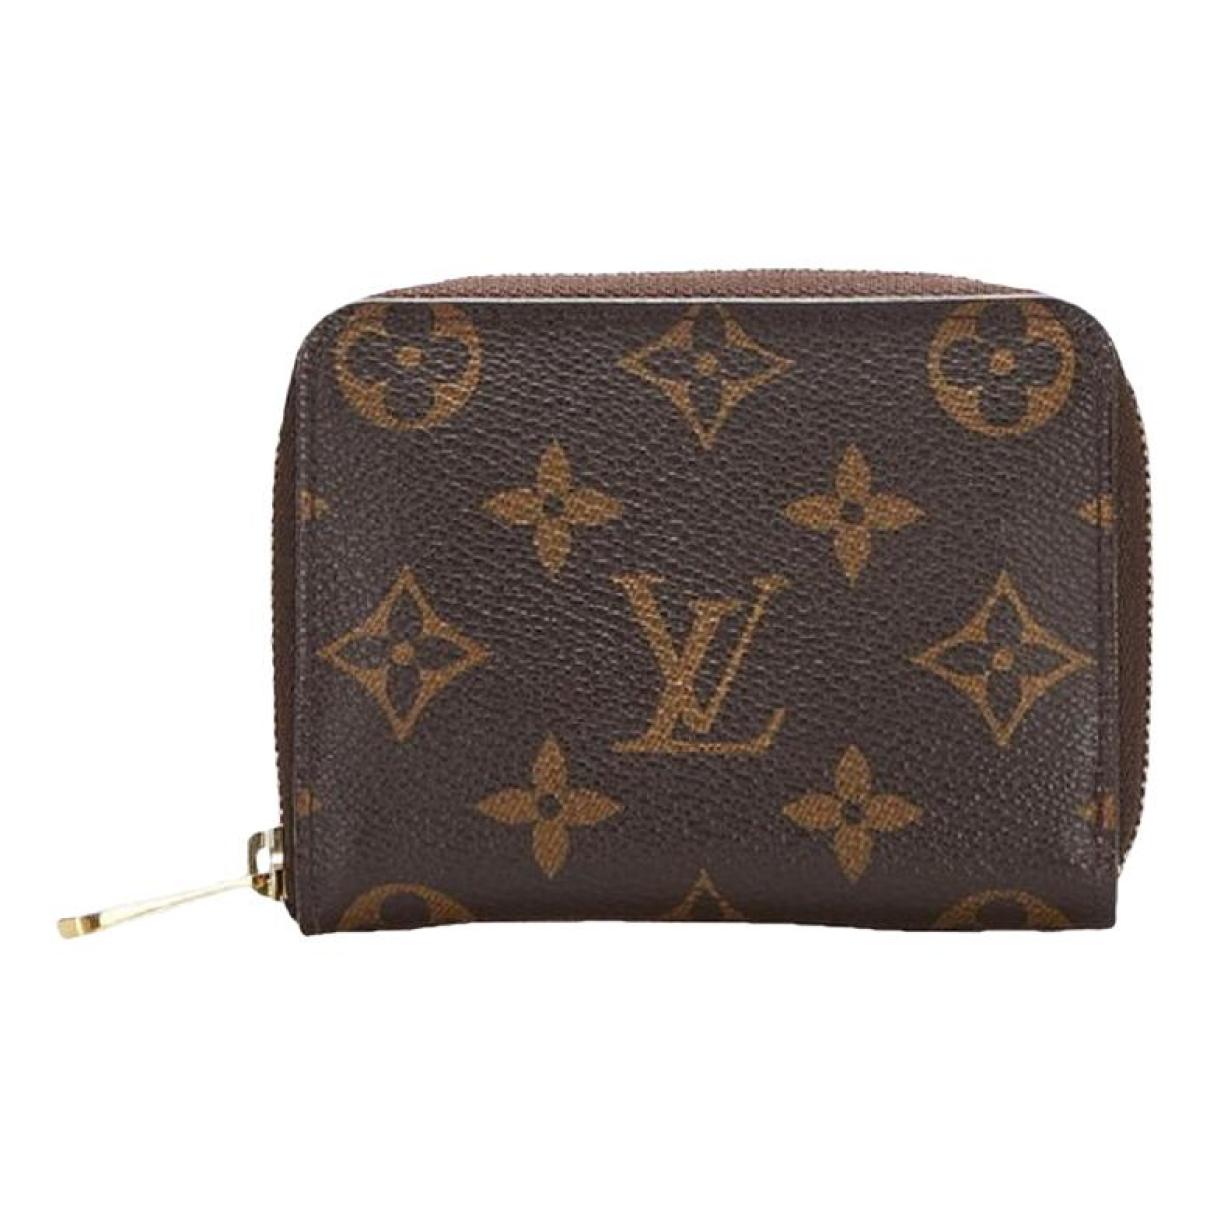 Louis Vuitton Purses, wallets & cases for Women - Vestiaire Collective